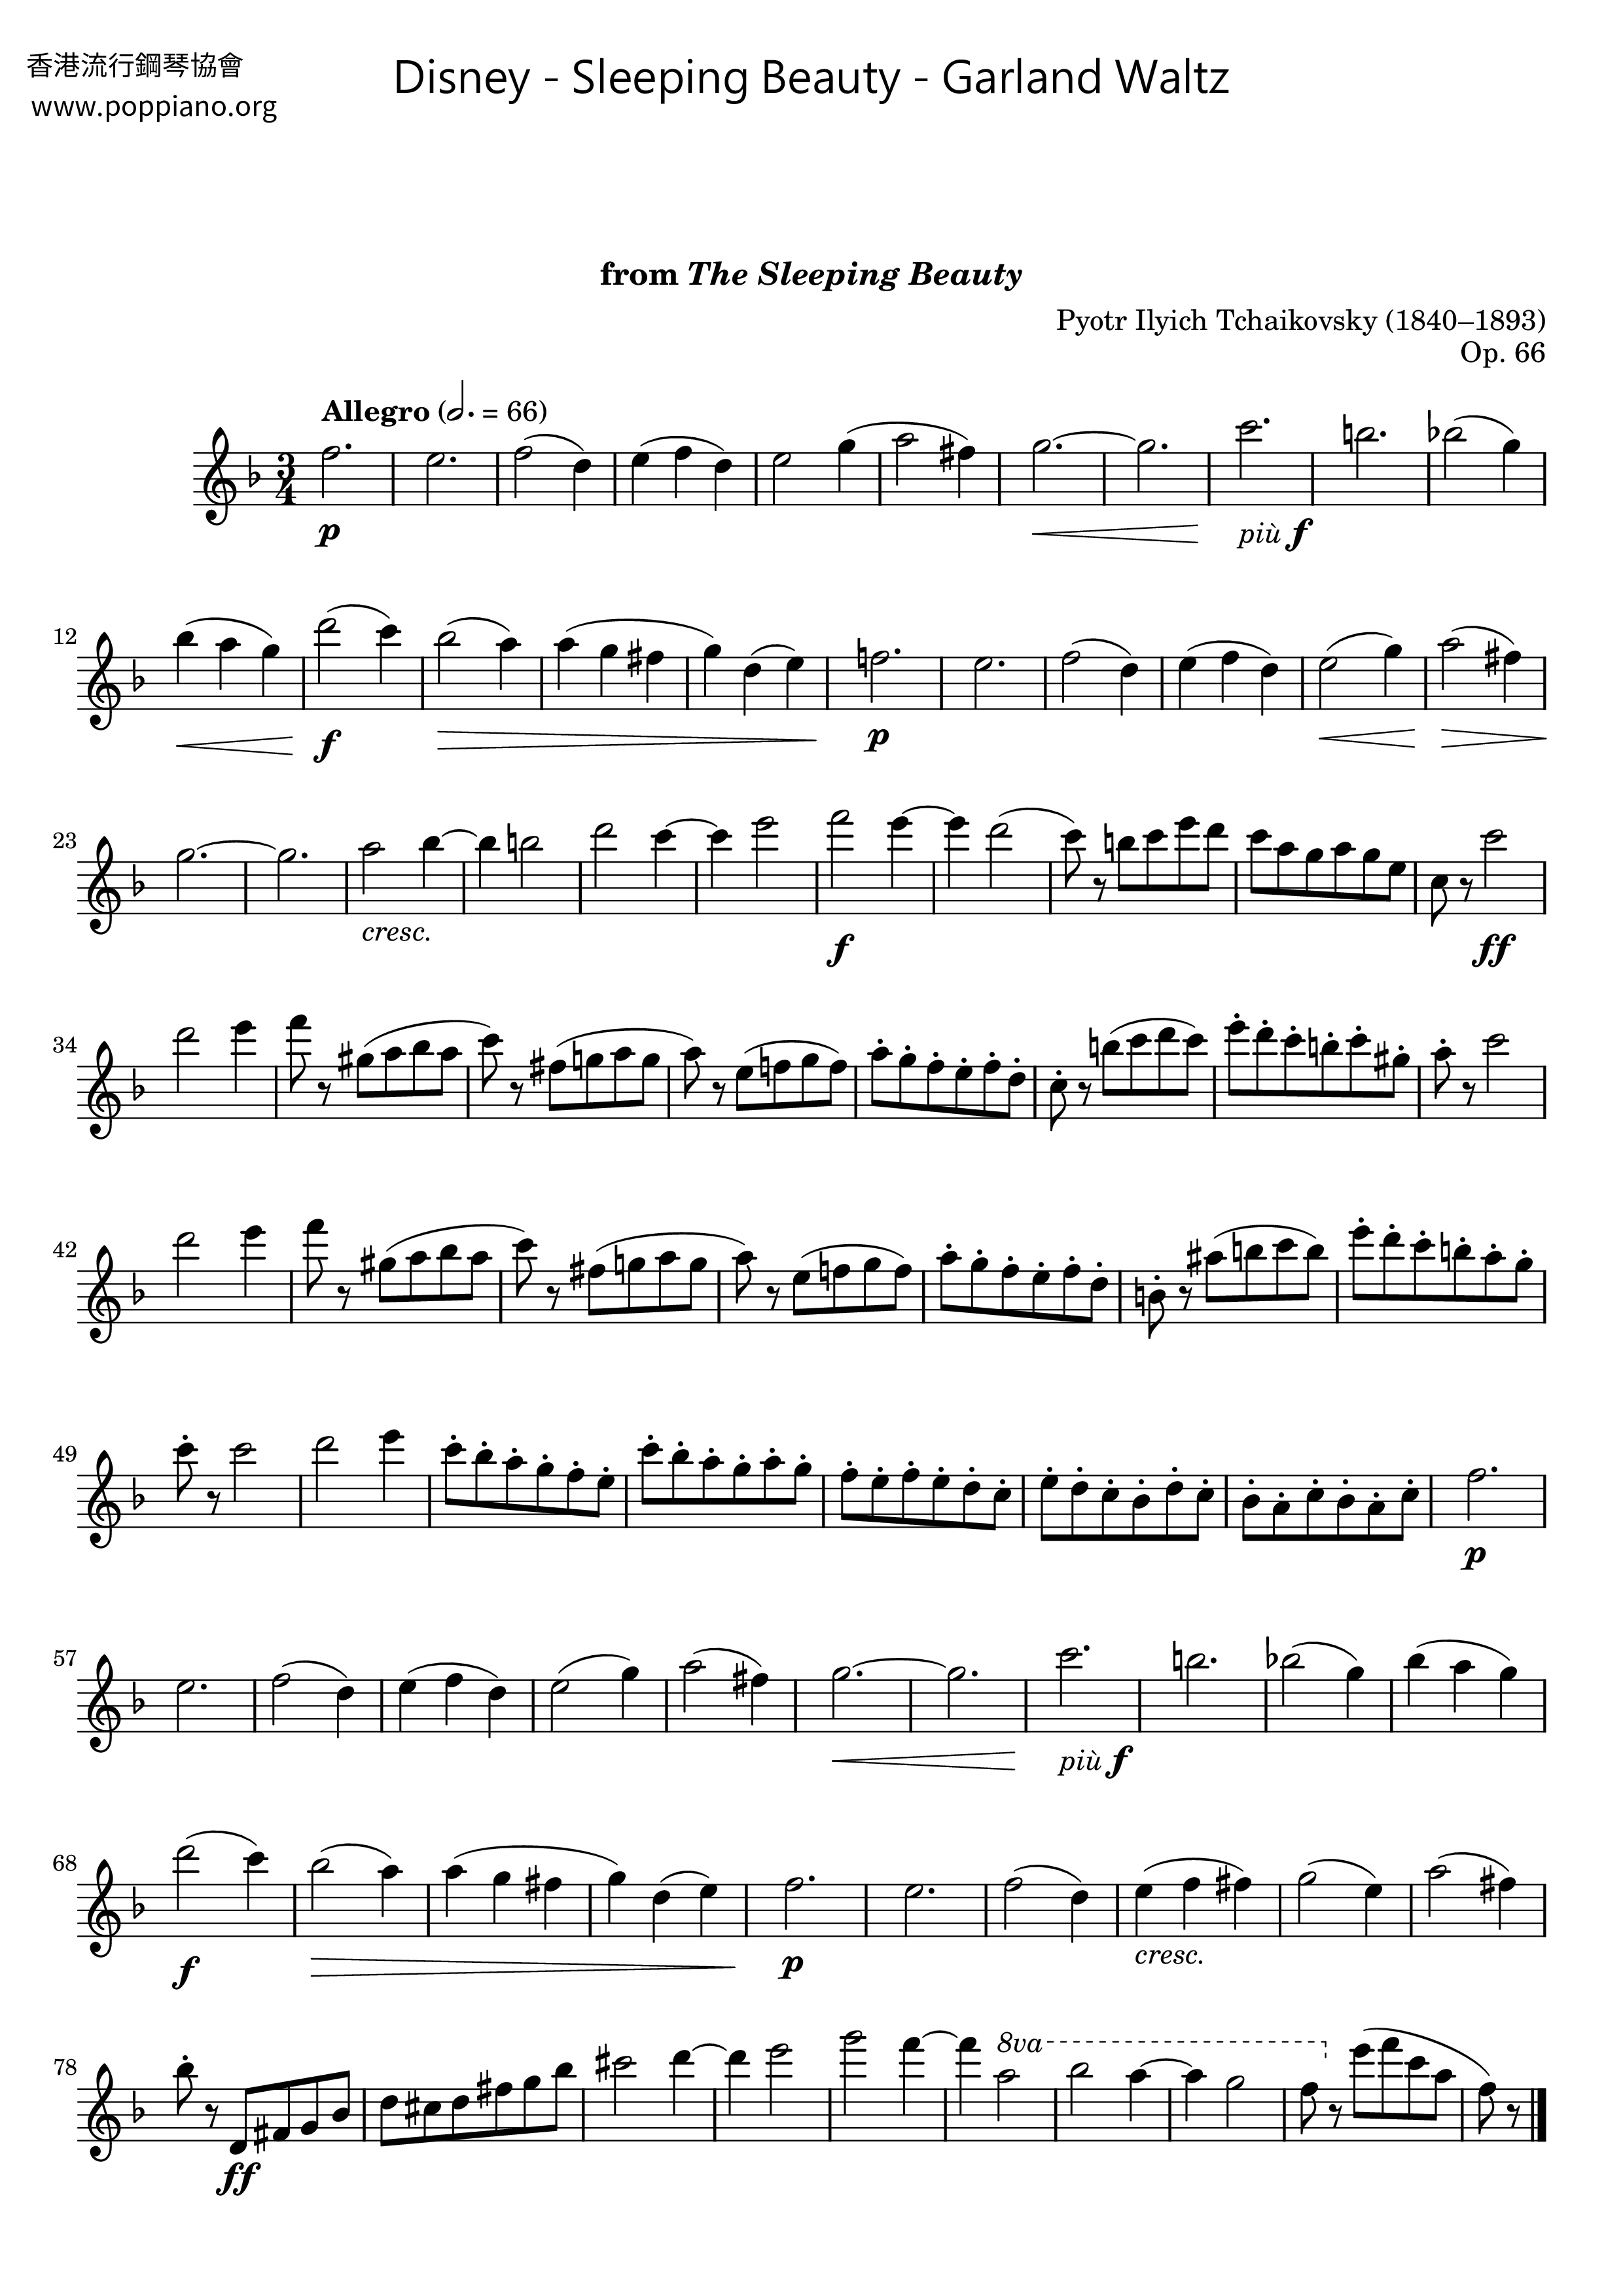 ディズニー Sleeping Beauty Garland Waltz ピアノ譜pdf 香港ポップピアノ協会 無料pdf楽譜ダウンロード Gakufu